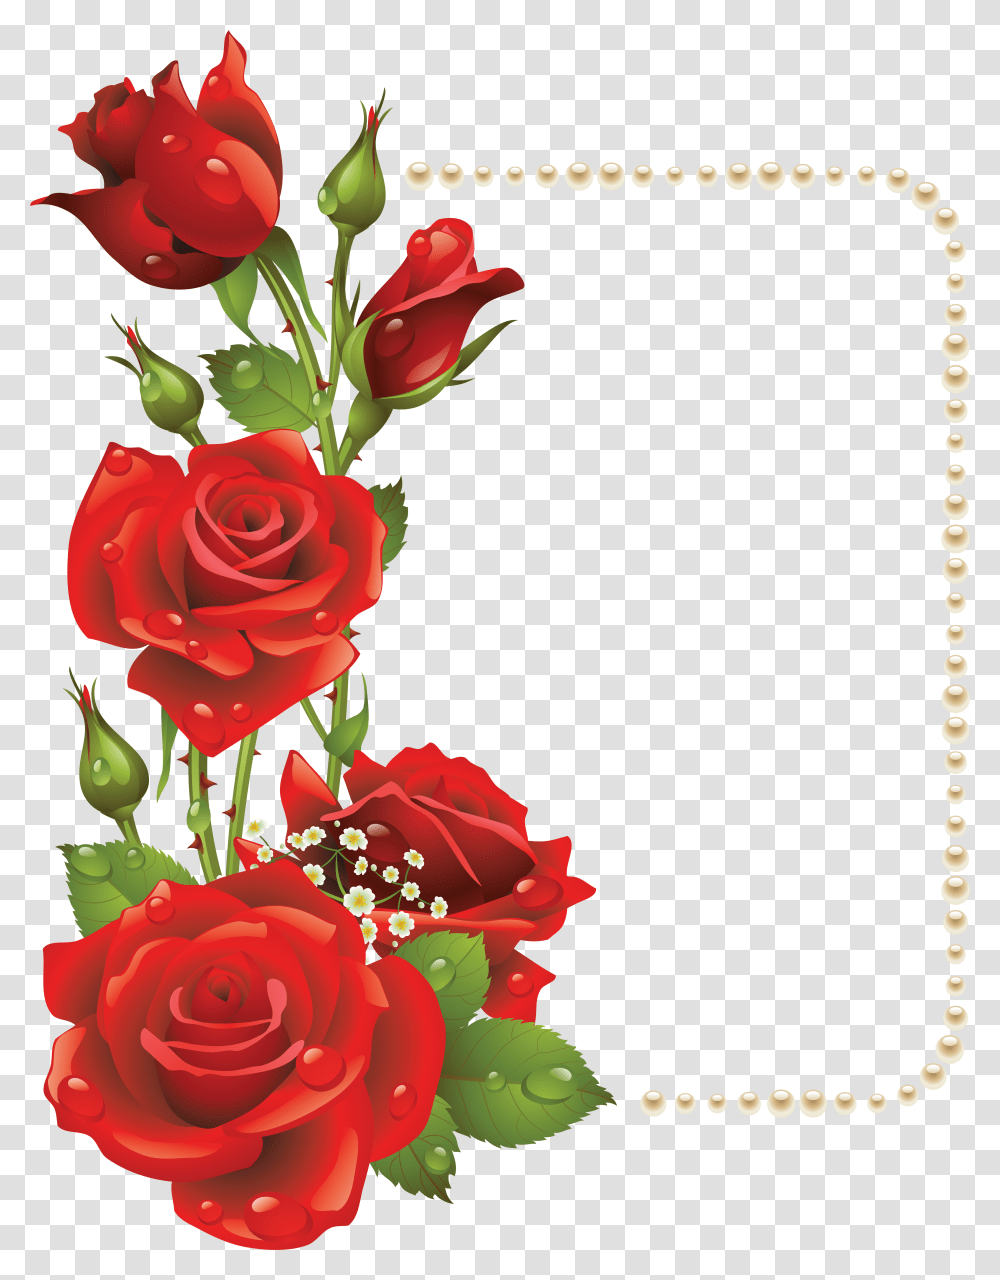 Valentines Day Roses Clipart Rose Flower Frames Design, Plant, Blossom, Graphics, Floral Design Transparent Png